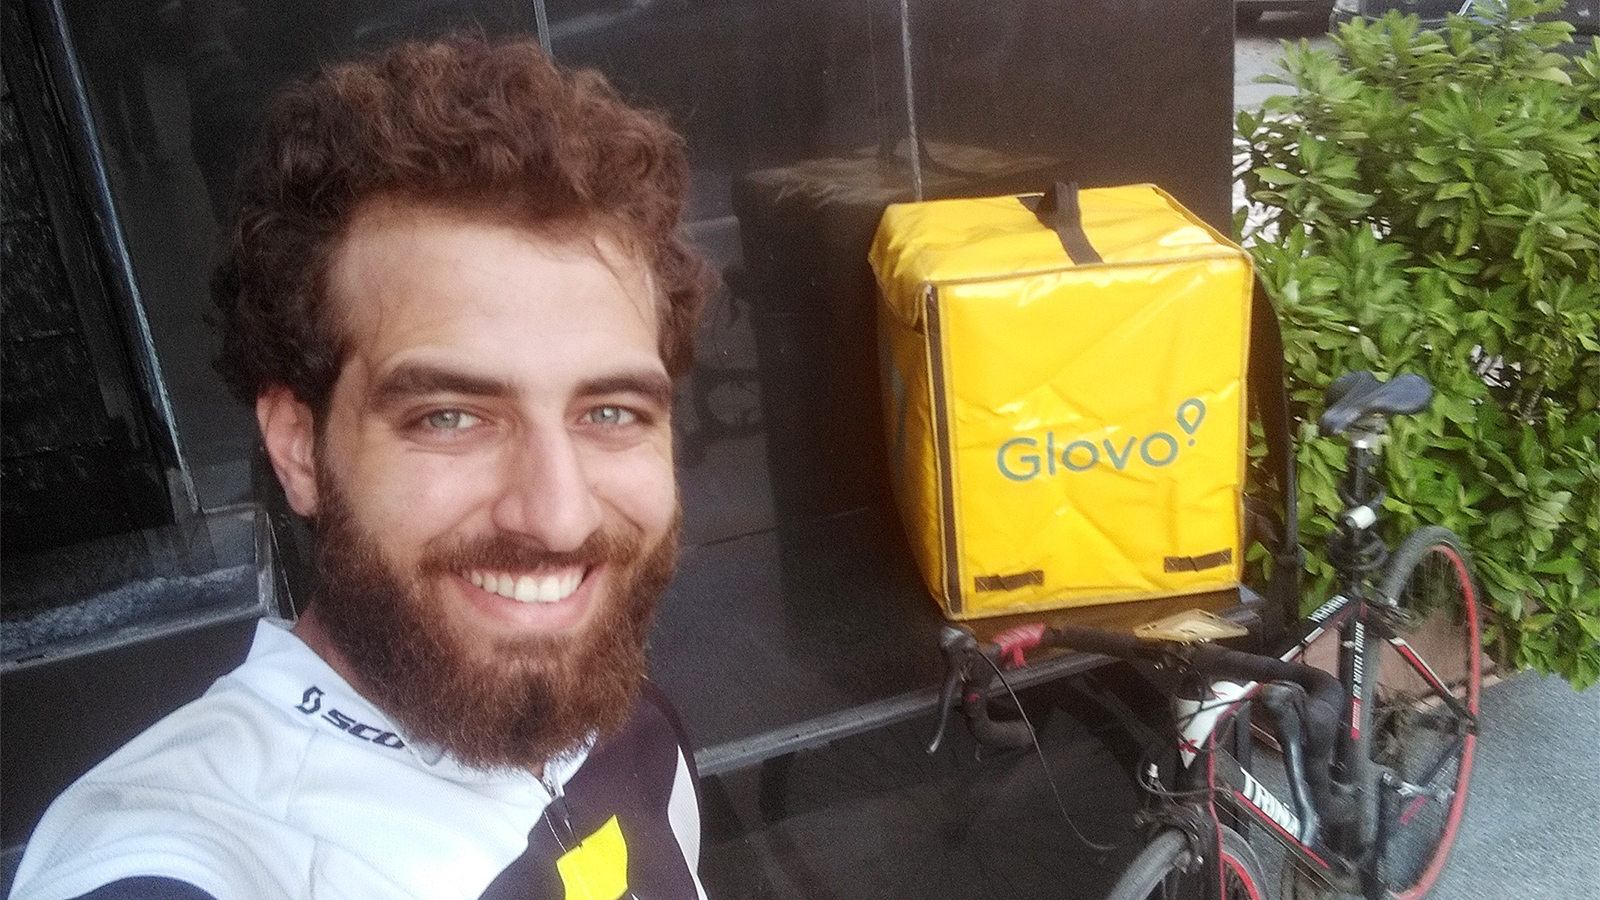 حب عدنان لركوب الدراجات الهوائية قاده للعمل في توصيل الطلبات بها (الجزيرة)